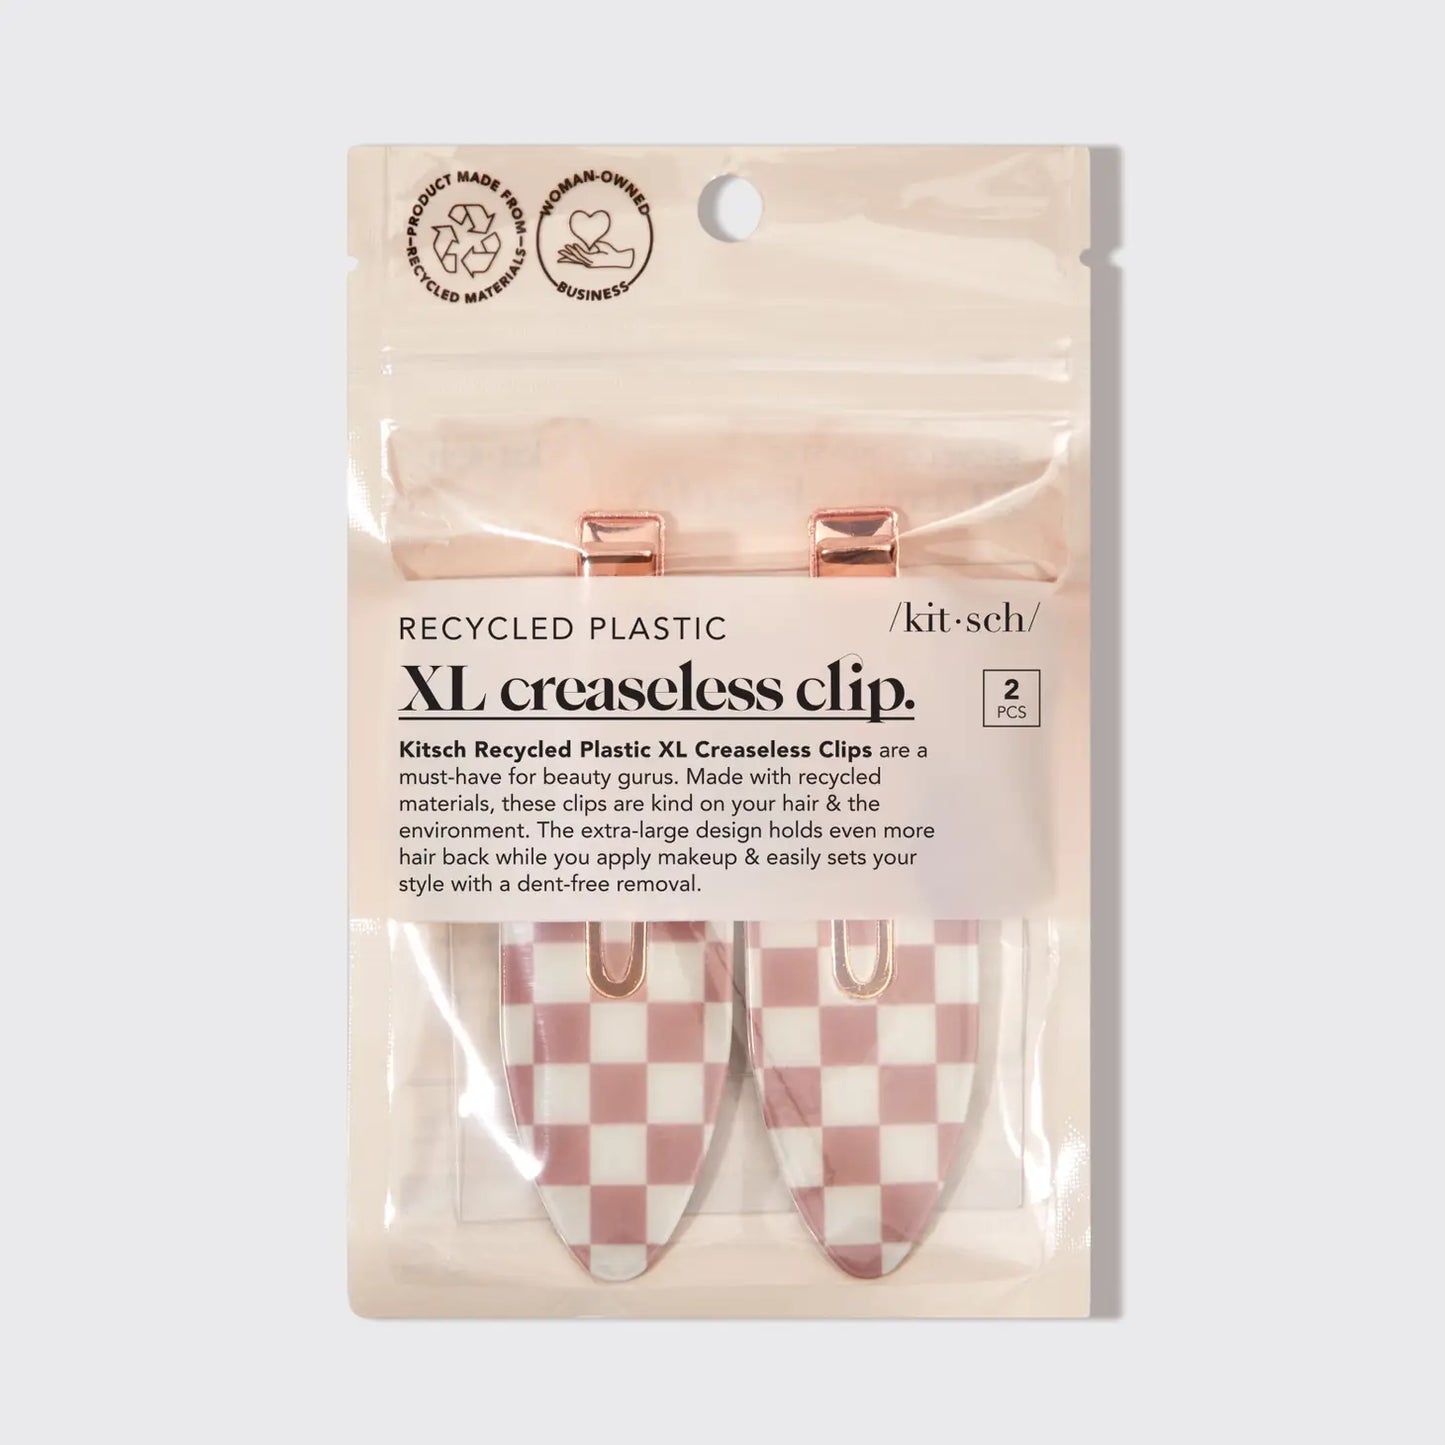 XL Creaseless Clips